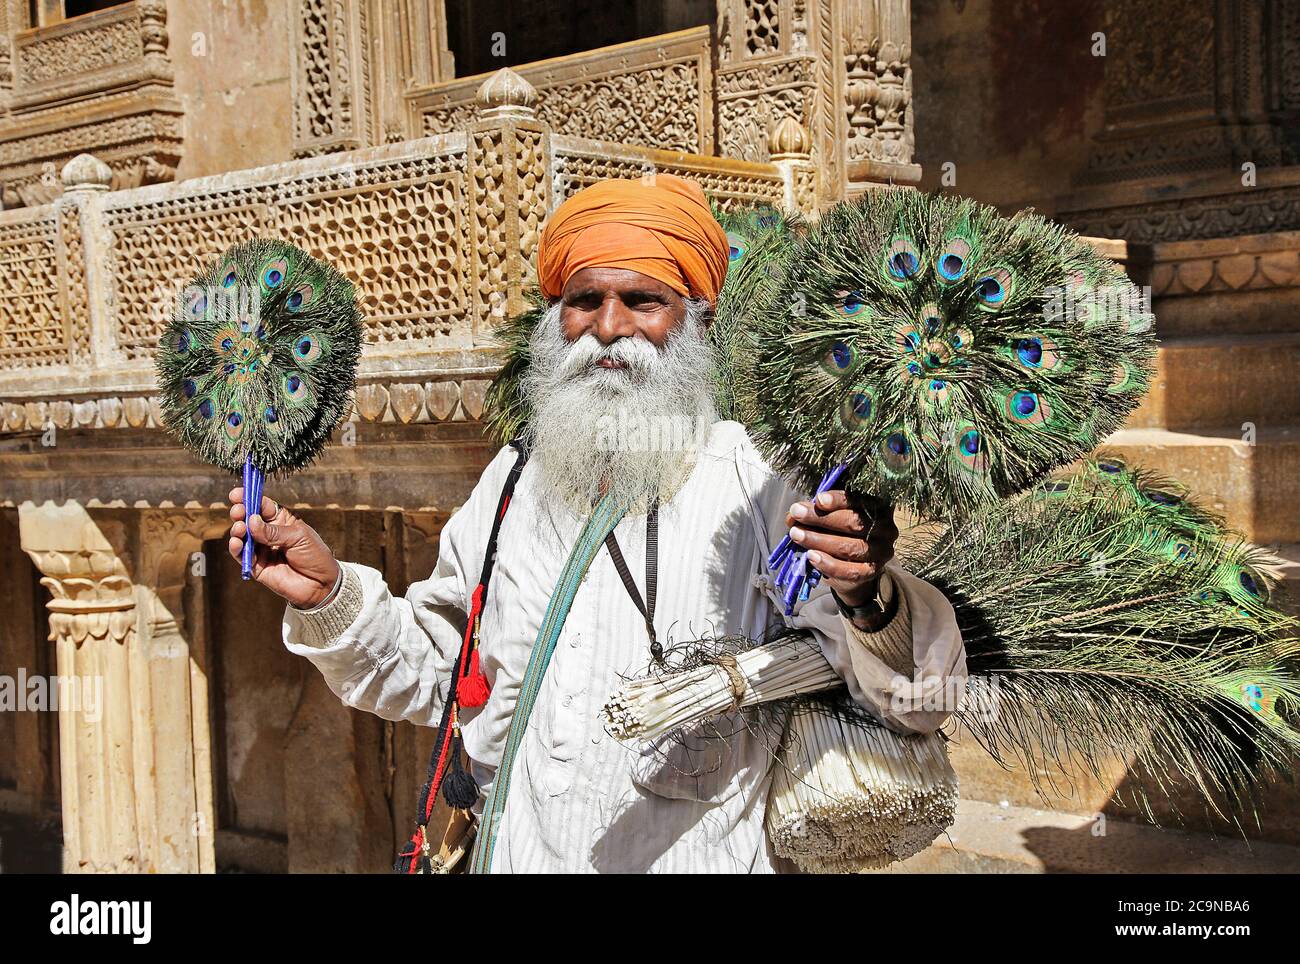 Vieille ville de Jaisalmer, vie quotidienne des indiens. Vieil homme vendant des plumes de paon. Fév 2013 Rajasthan, Inde Banque D'Images